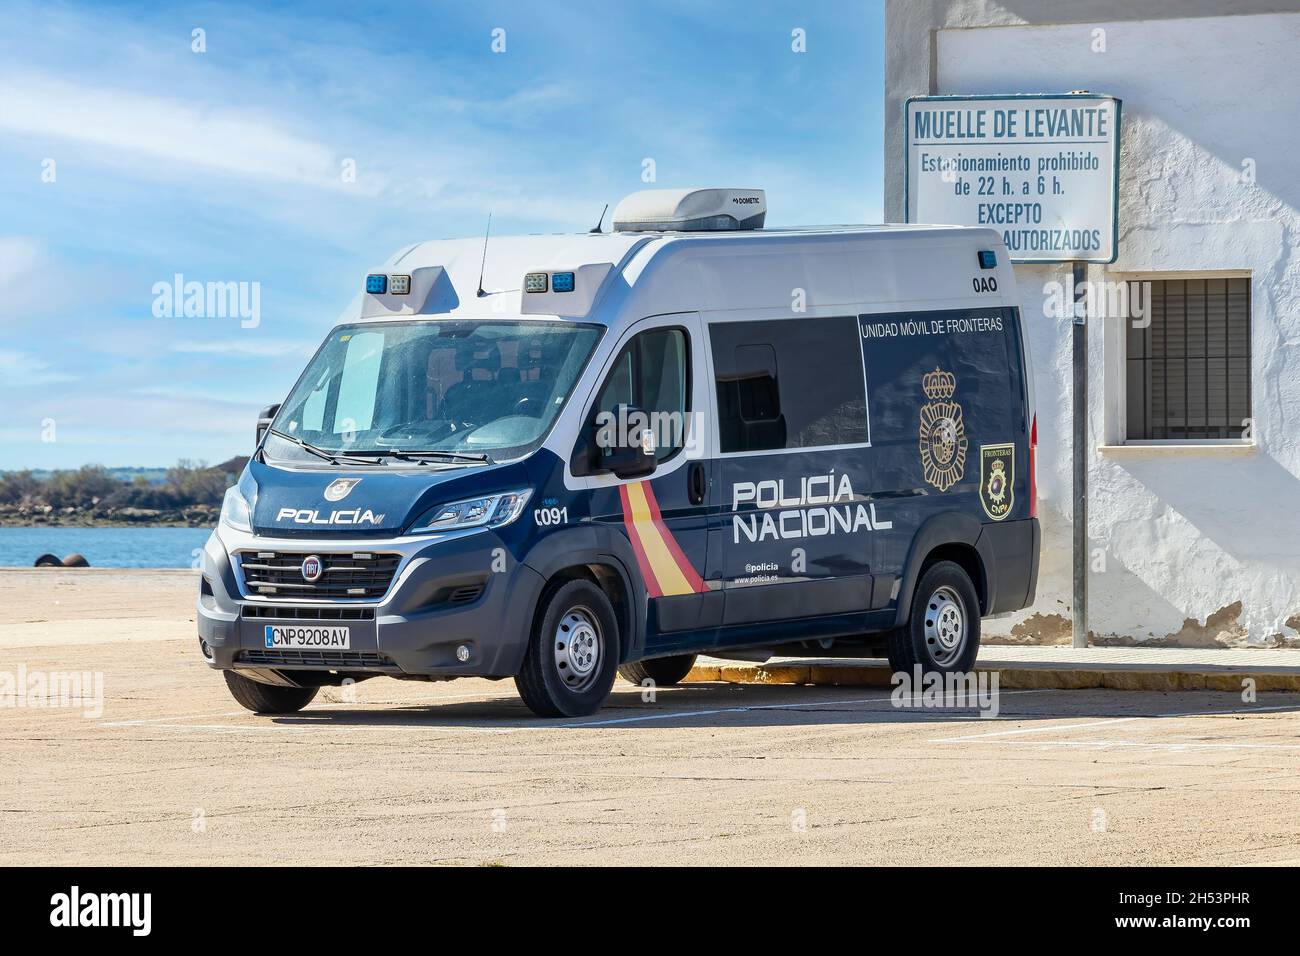 Huelva, Spain - November 5, 2021: National police van parked in the port of Huelva Stock Photo